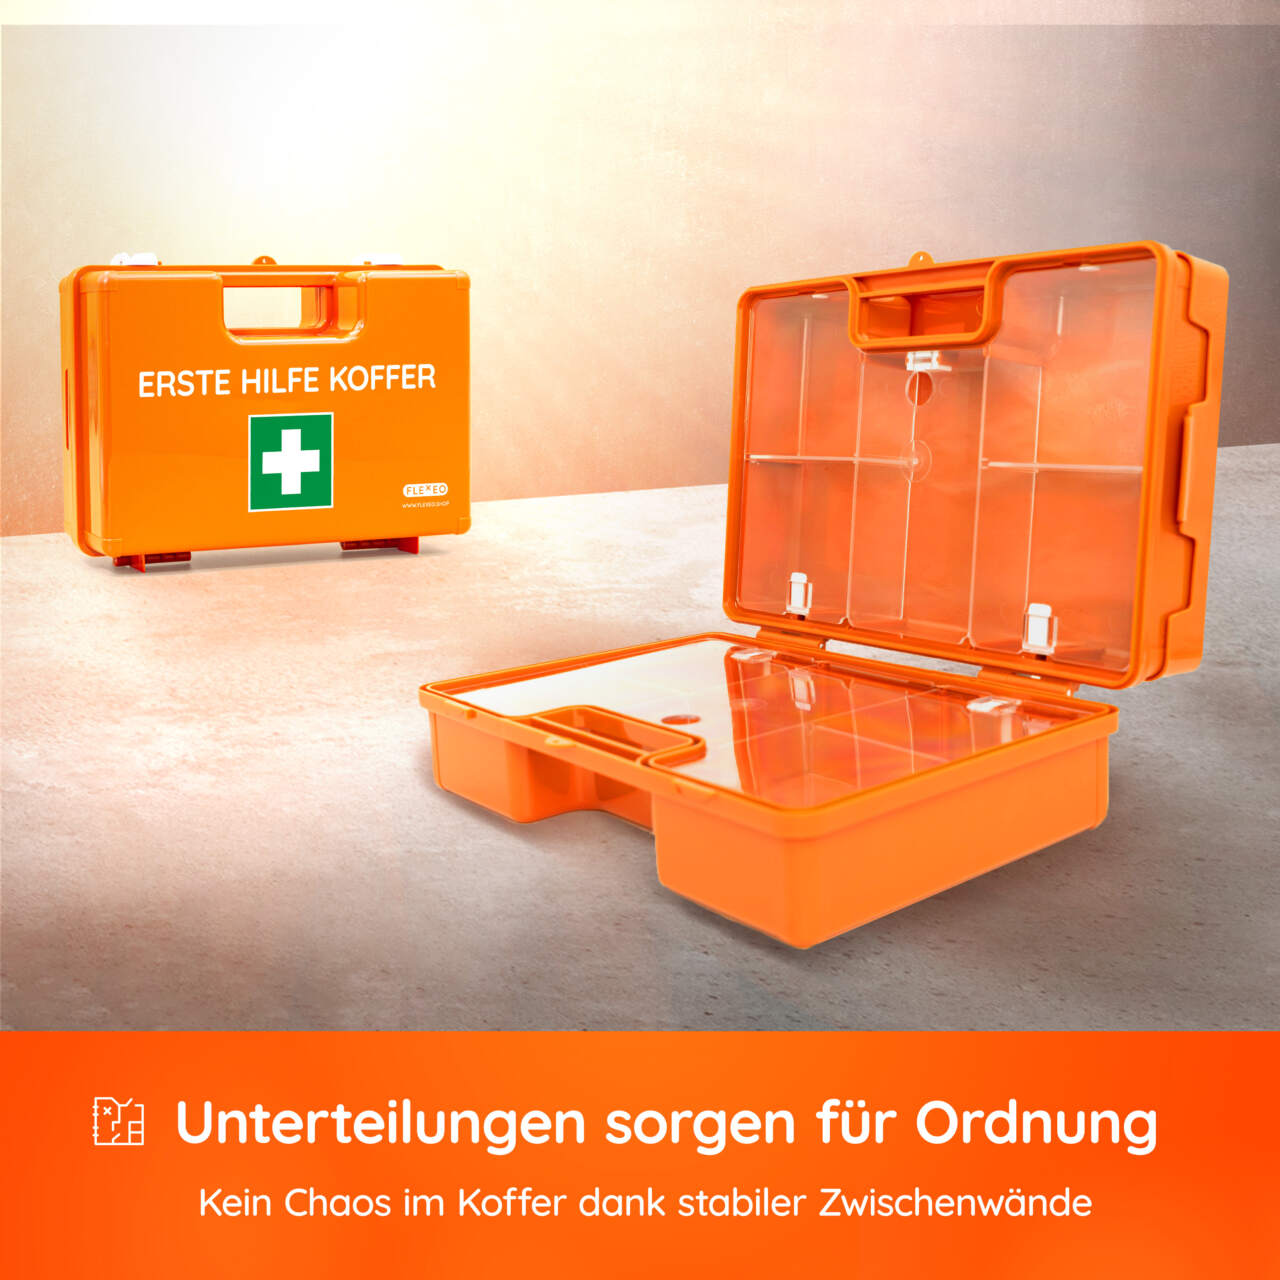 Erste Hilfe Koffer Typ 2 leer orange